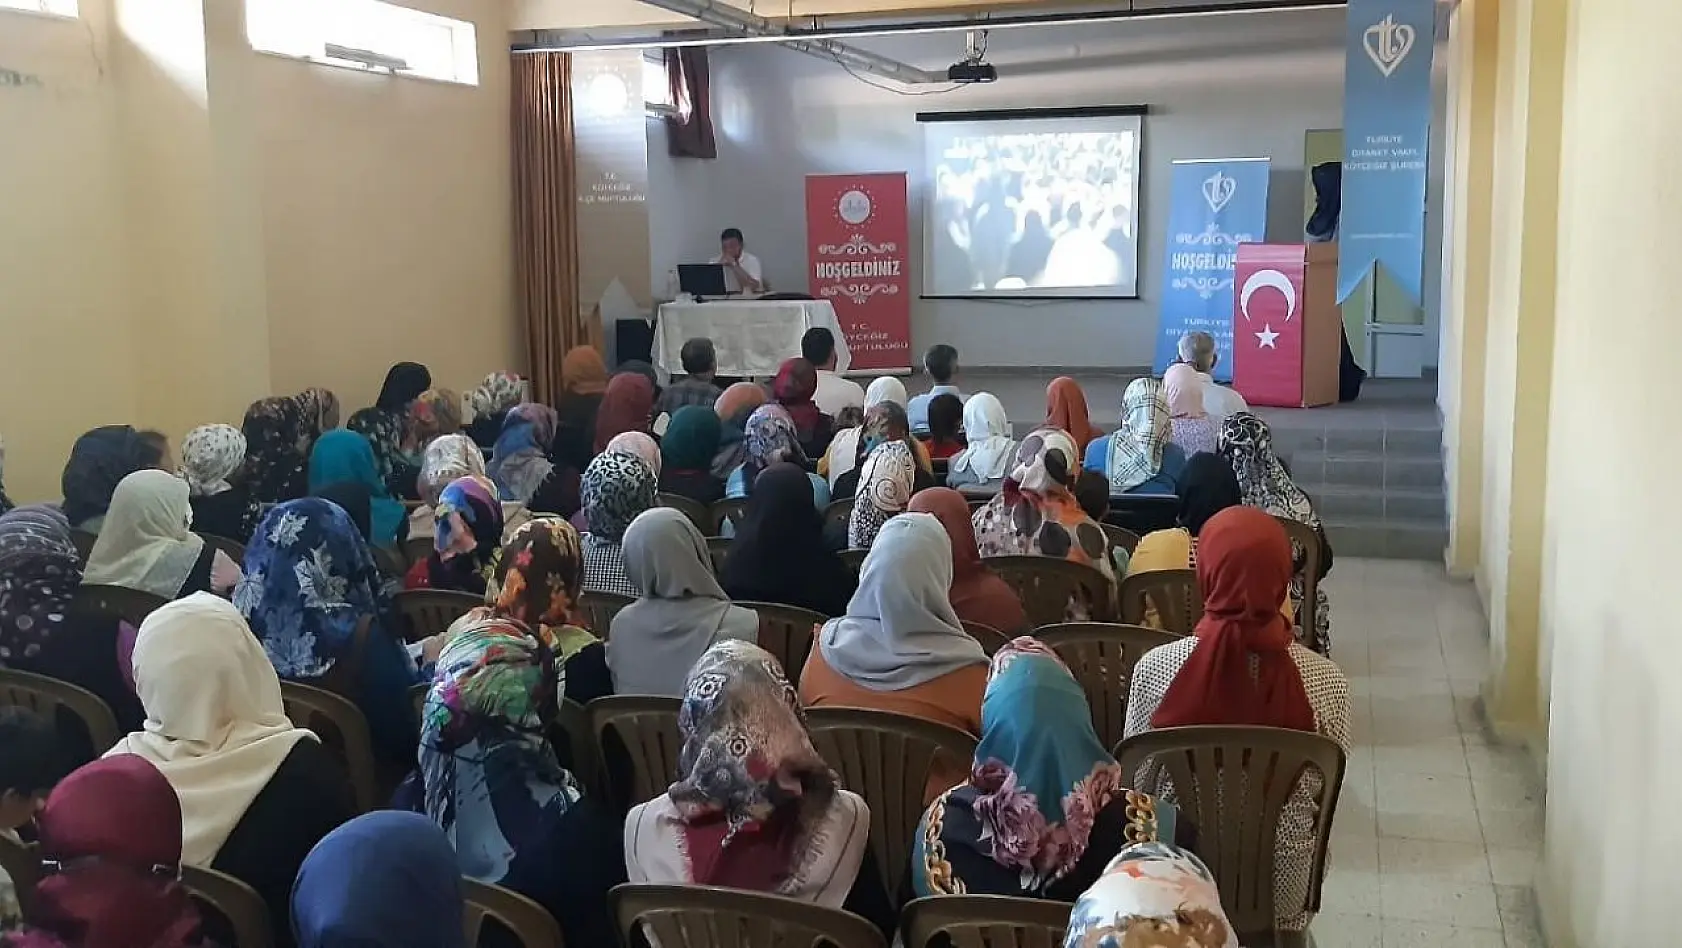 Köyceğiz'de 'Dijital Dünyada Değerleriyle Aile Olmak' konulu konferans düzenlendi